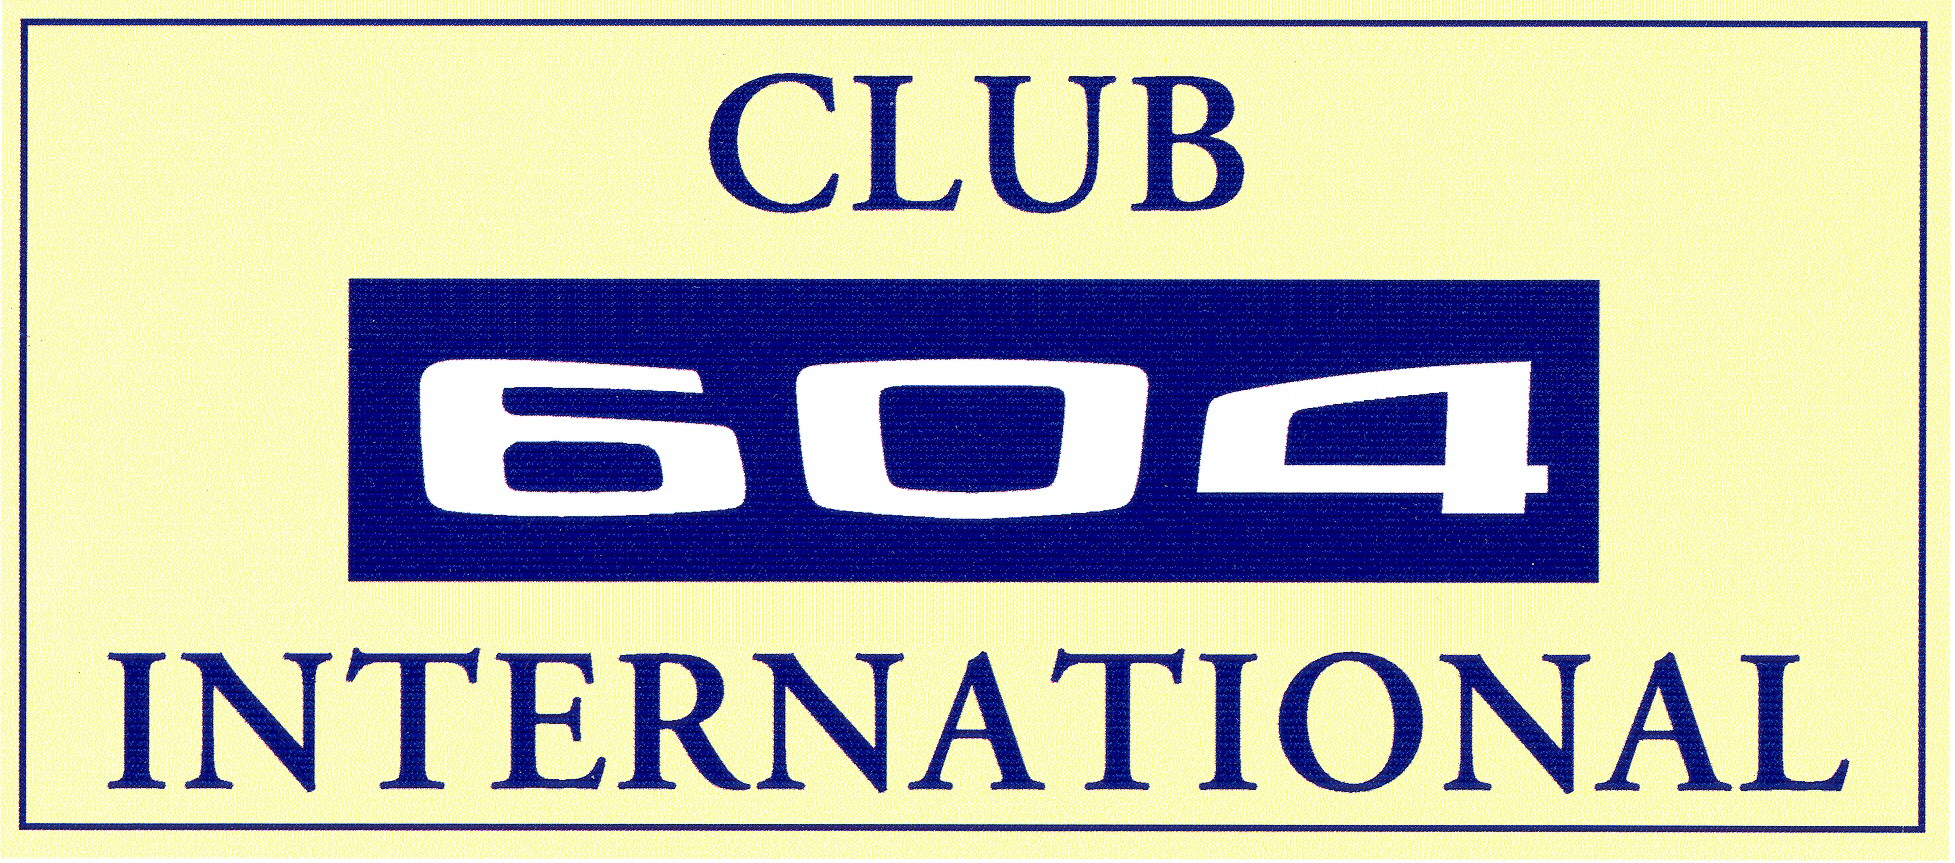 Club 604 International